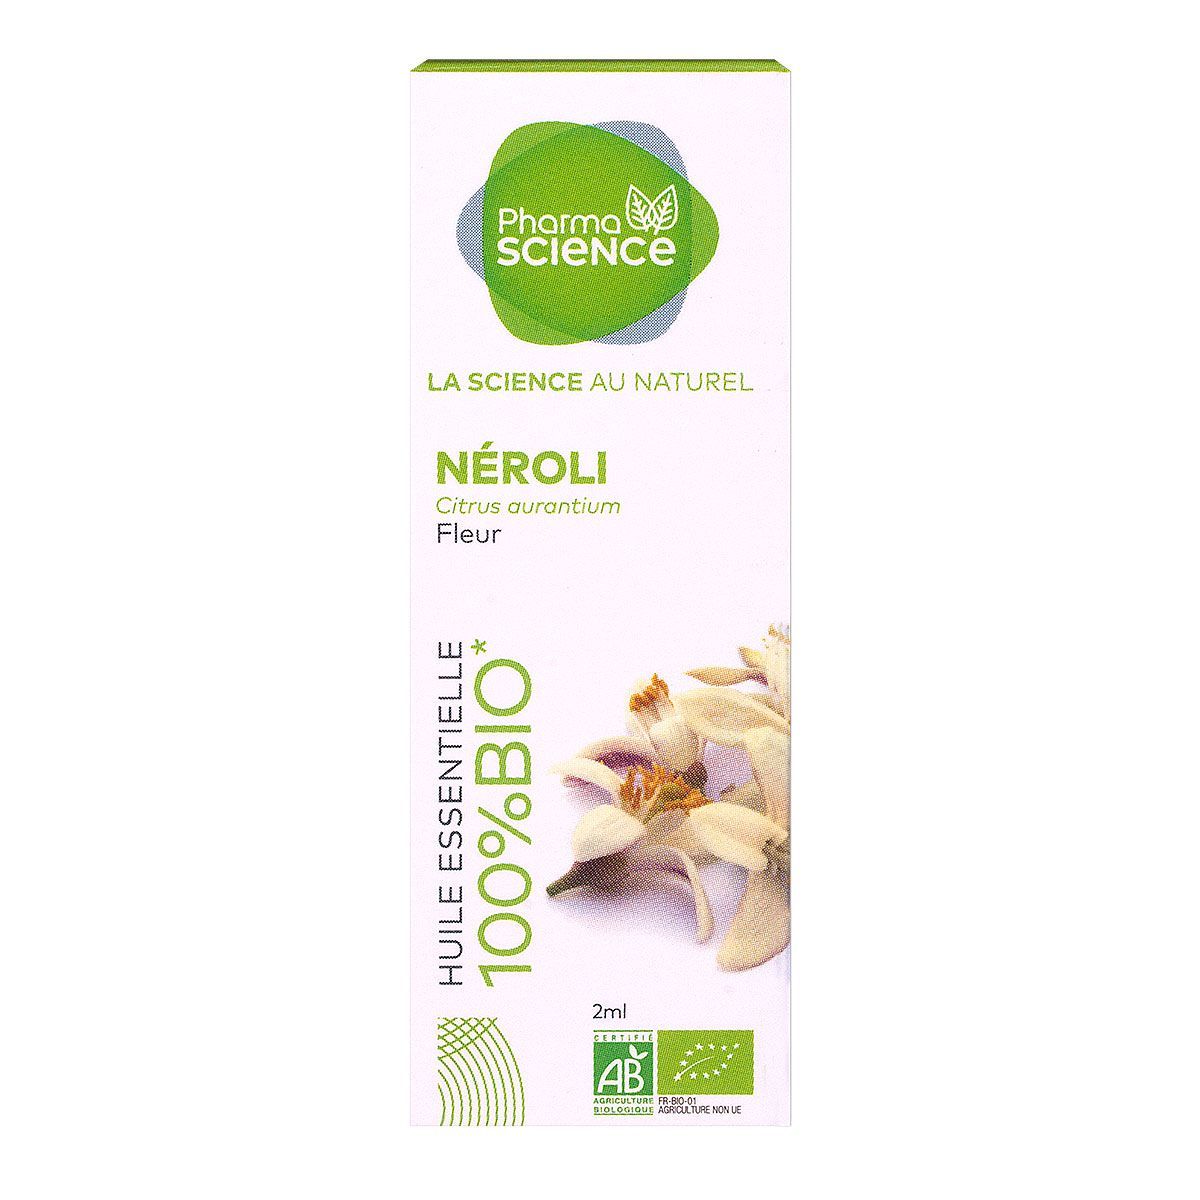 L'huile essentielle de néroli Pharmascience est utilisée en cas d